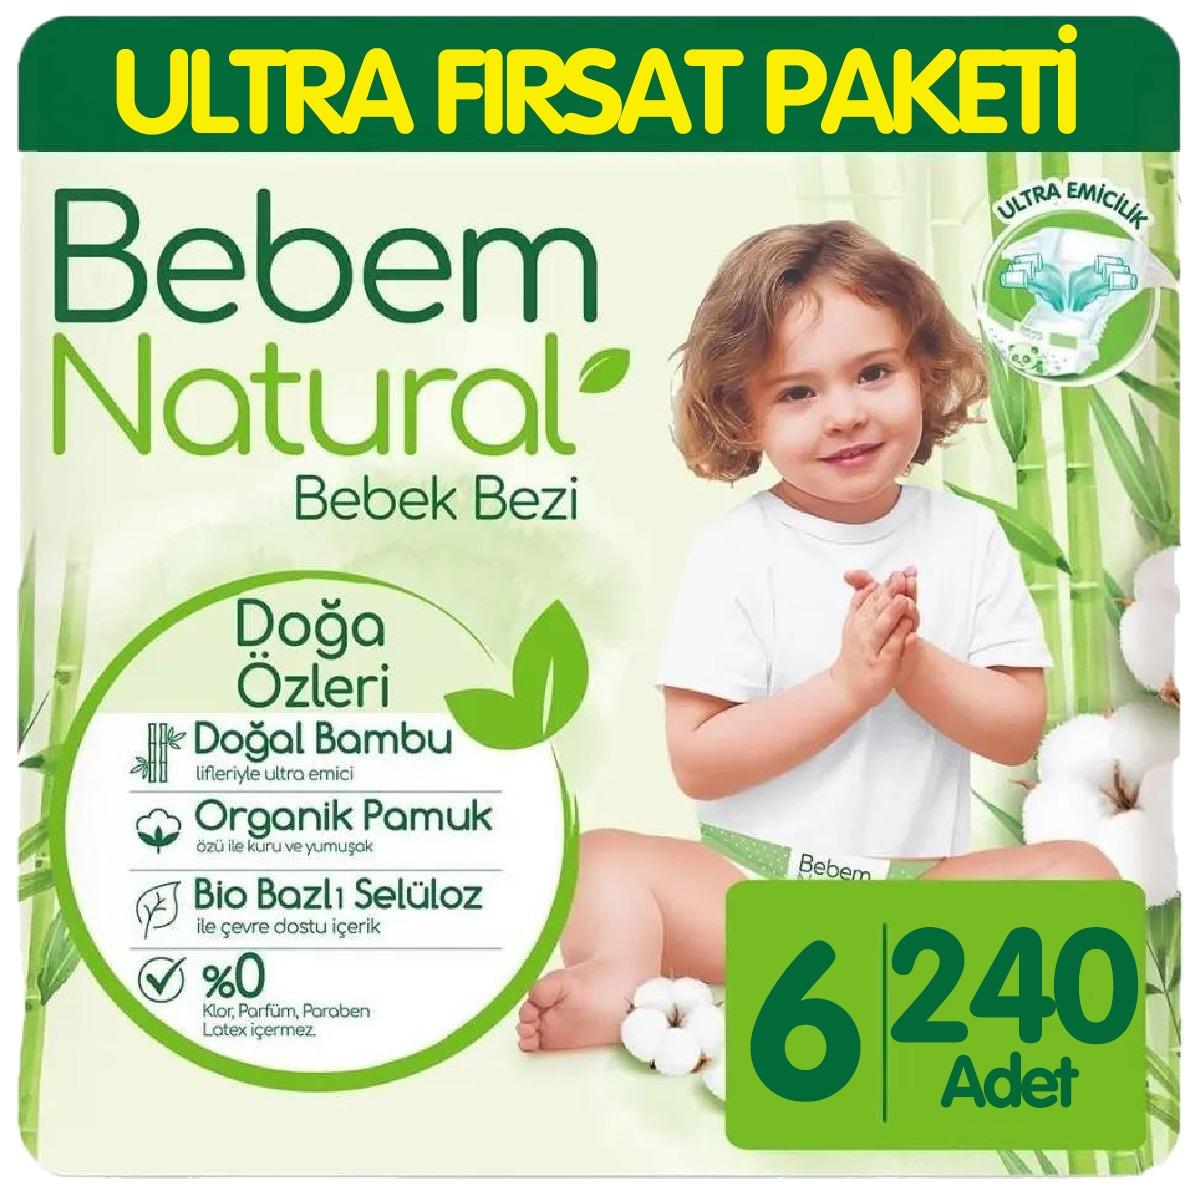 Bebem Natural Bebek Bezi Ultra Fırsat Paketi 6 Beden 60x4 240 Adet